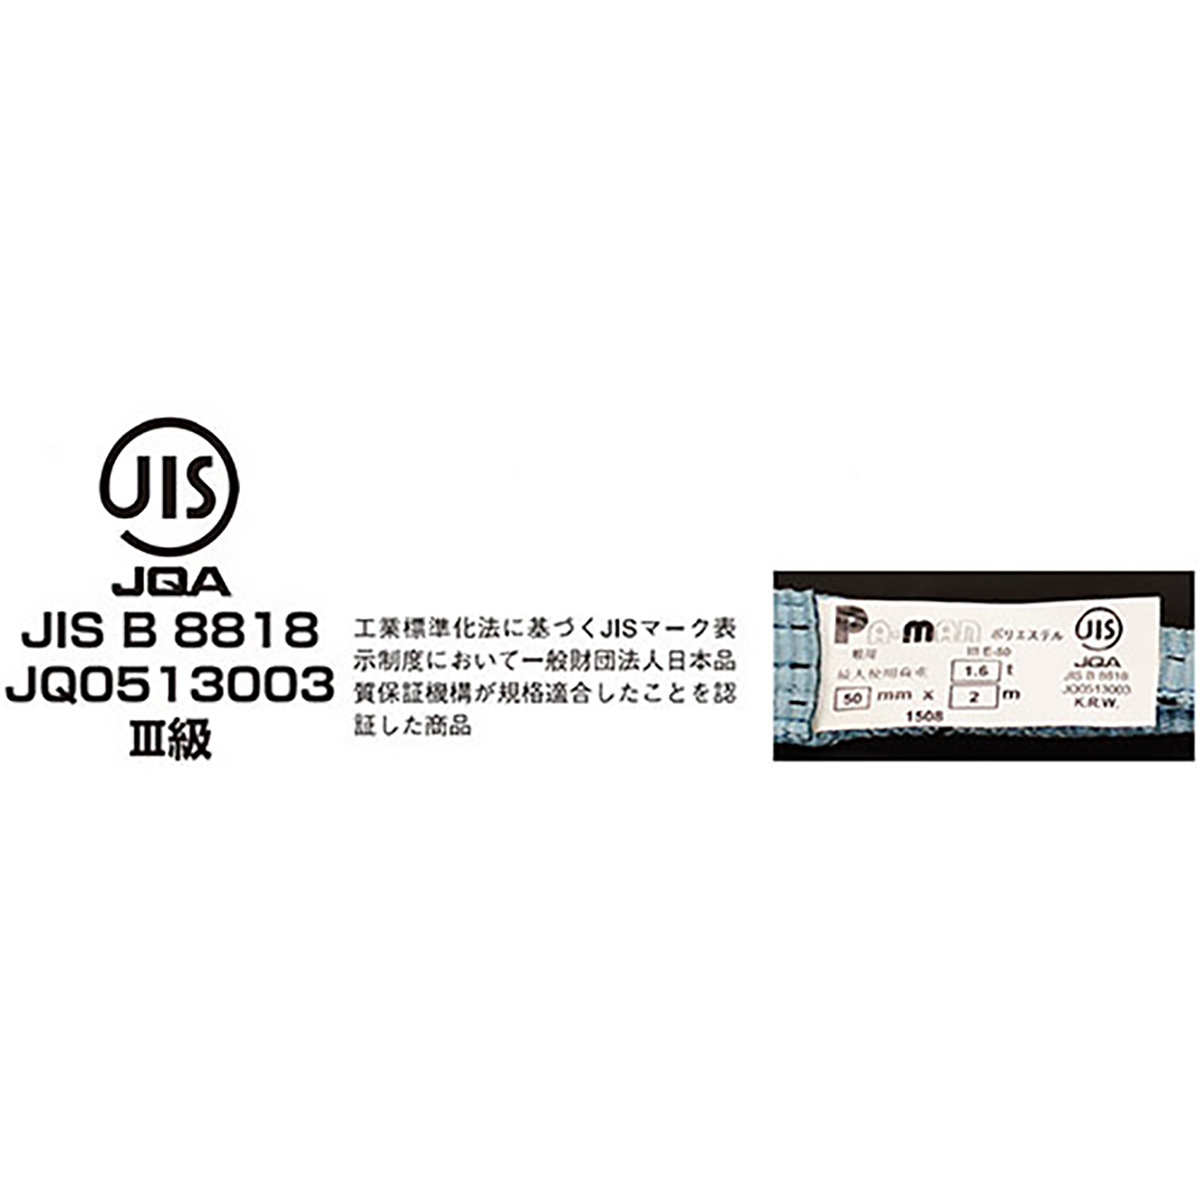 ポリベルトスリング JIS III級 ソフト面付 巾25mm 5m 1本